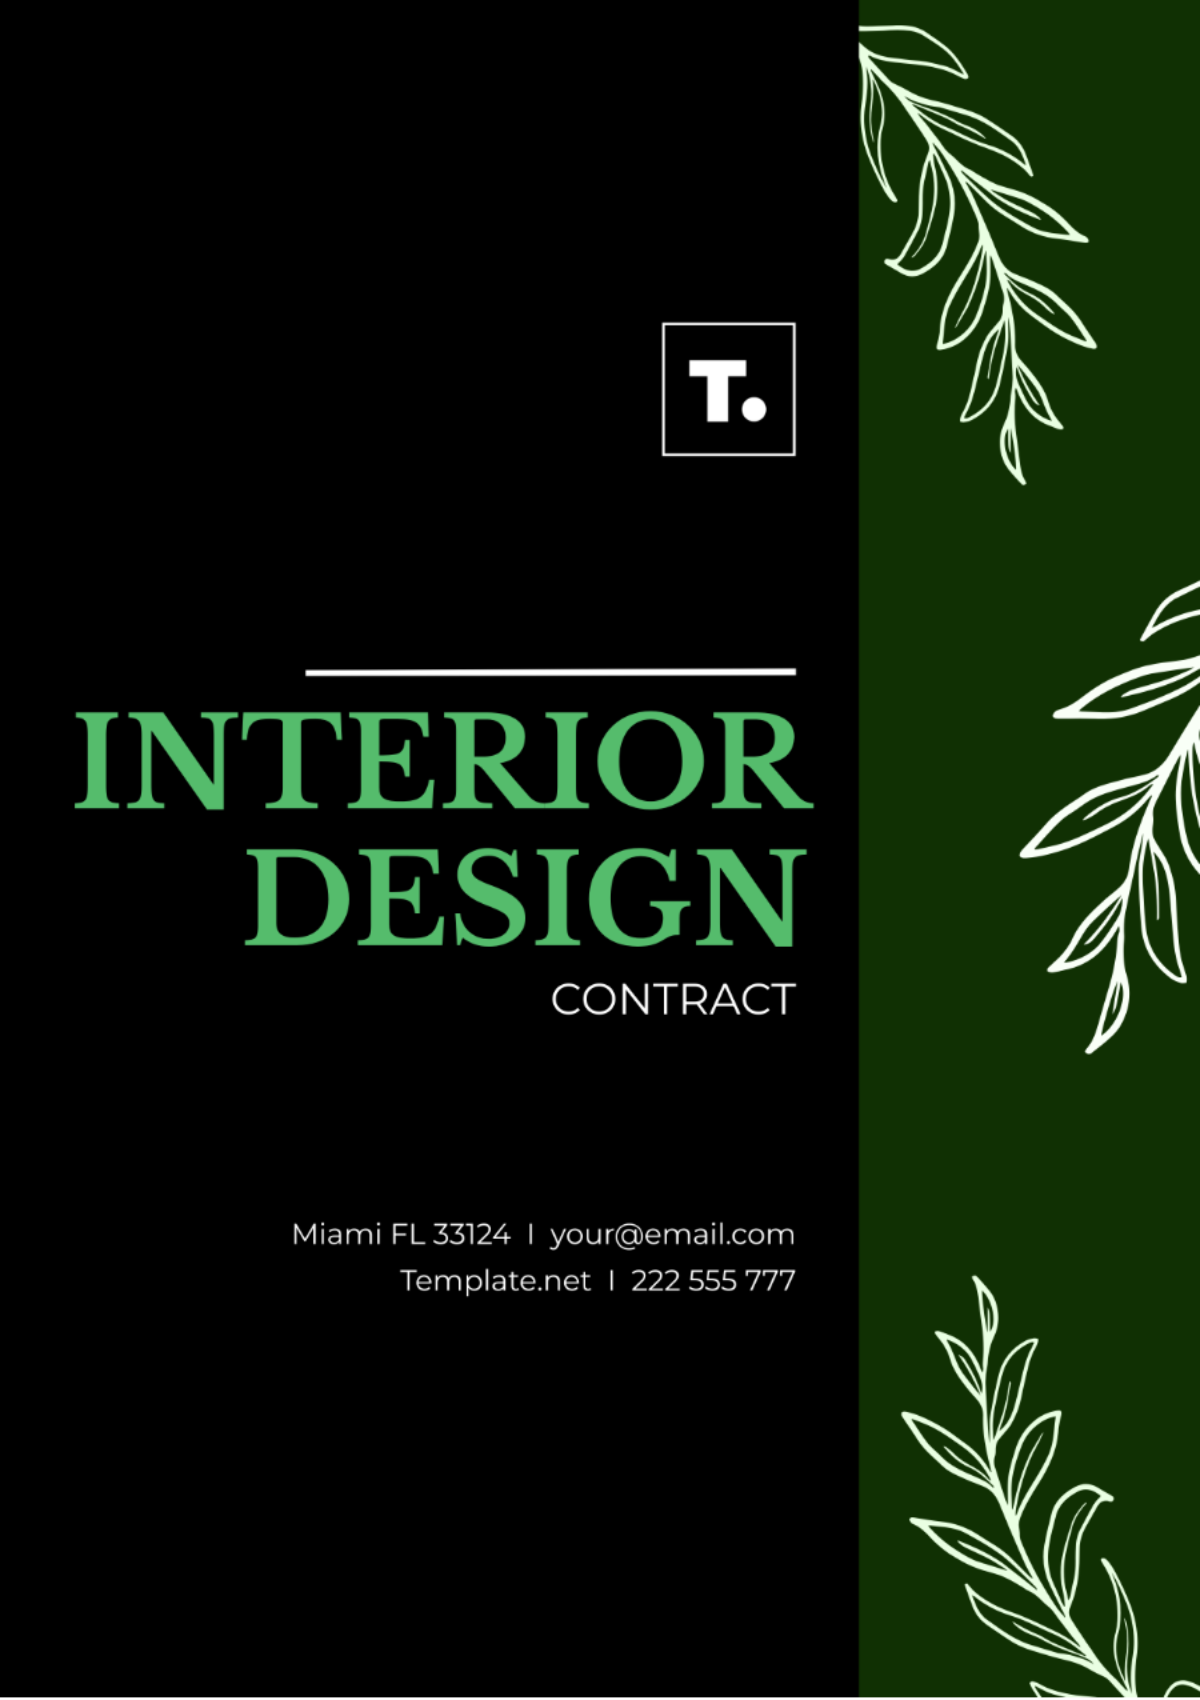 Interior Design Contract Template